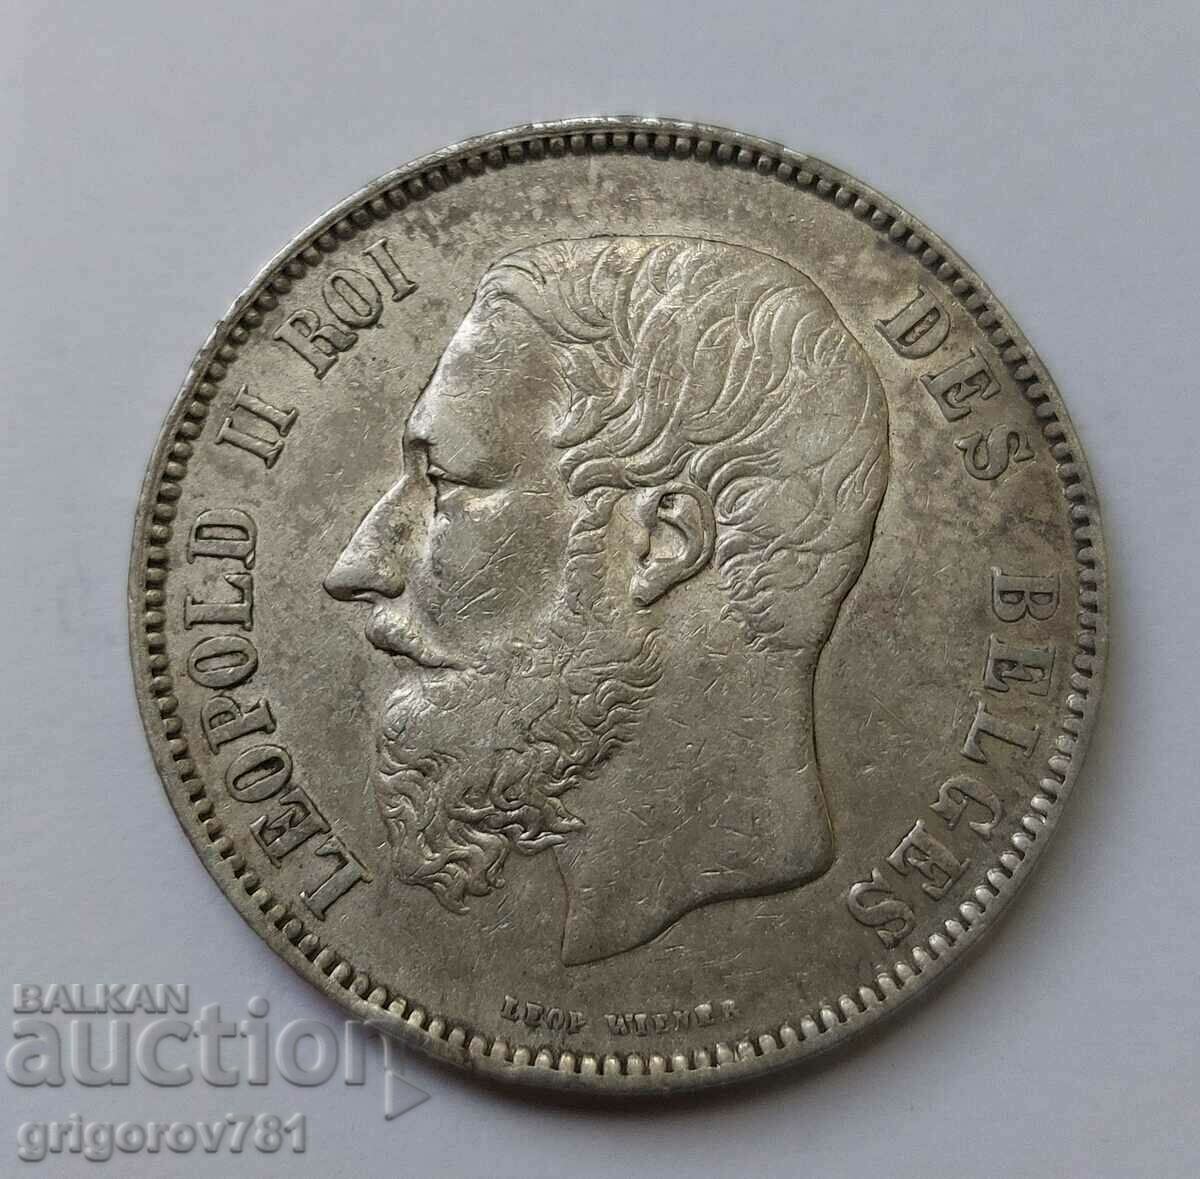 Ασημένιο 5 Φράγκα Βέλγιο 1873 - Ασημένιο νόμισμα #104